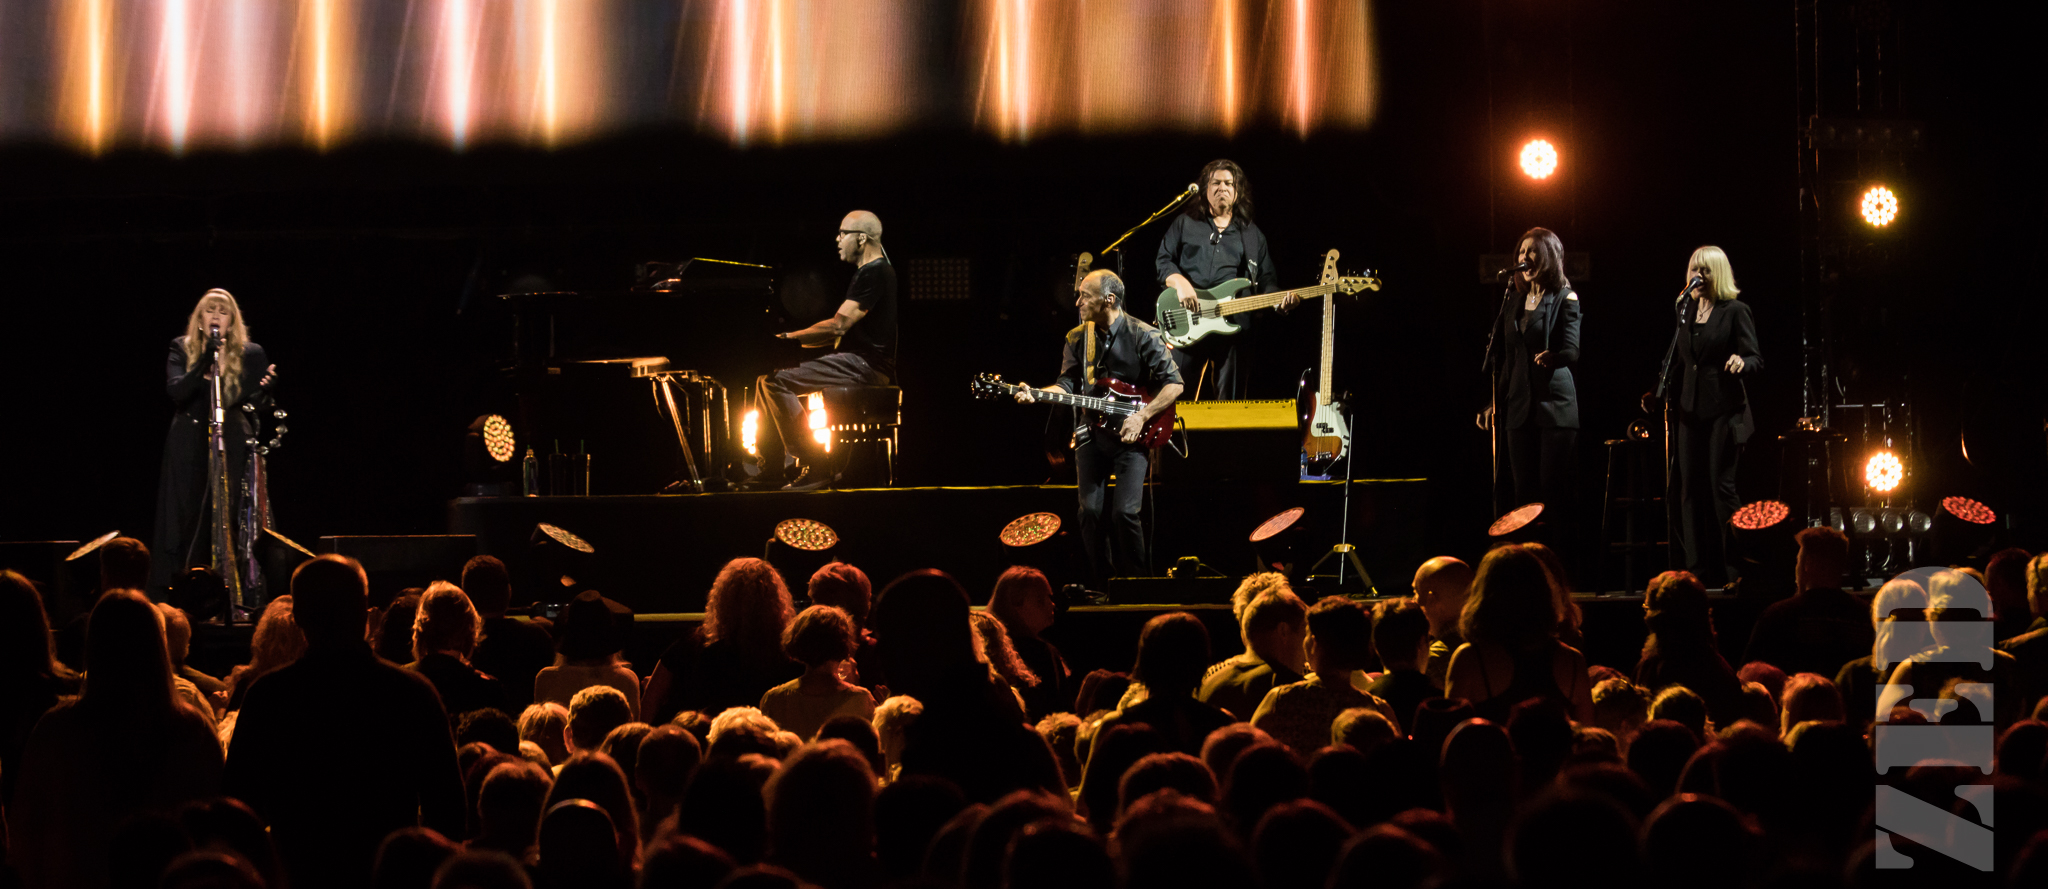 Stevie Nicks @ Spark Arena 21 Nov 17-7.jpg